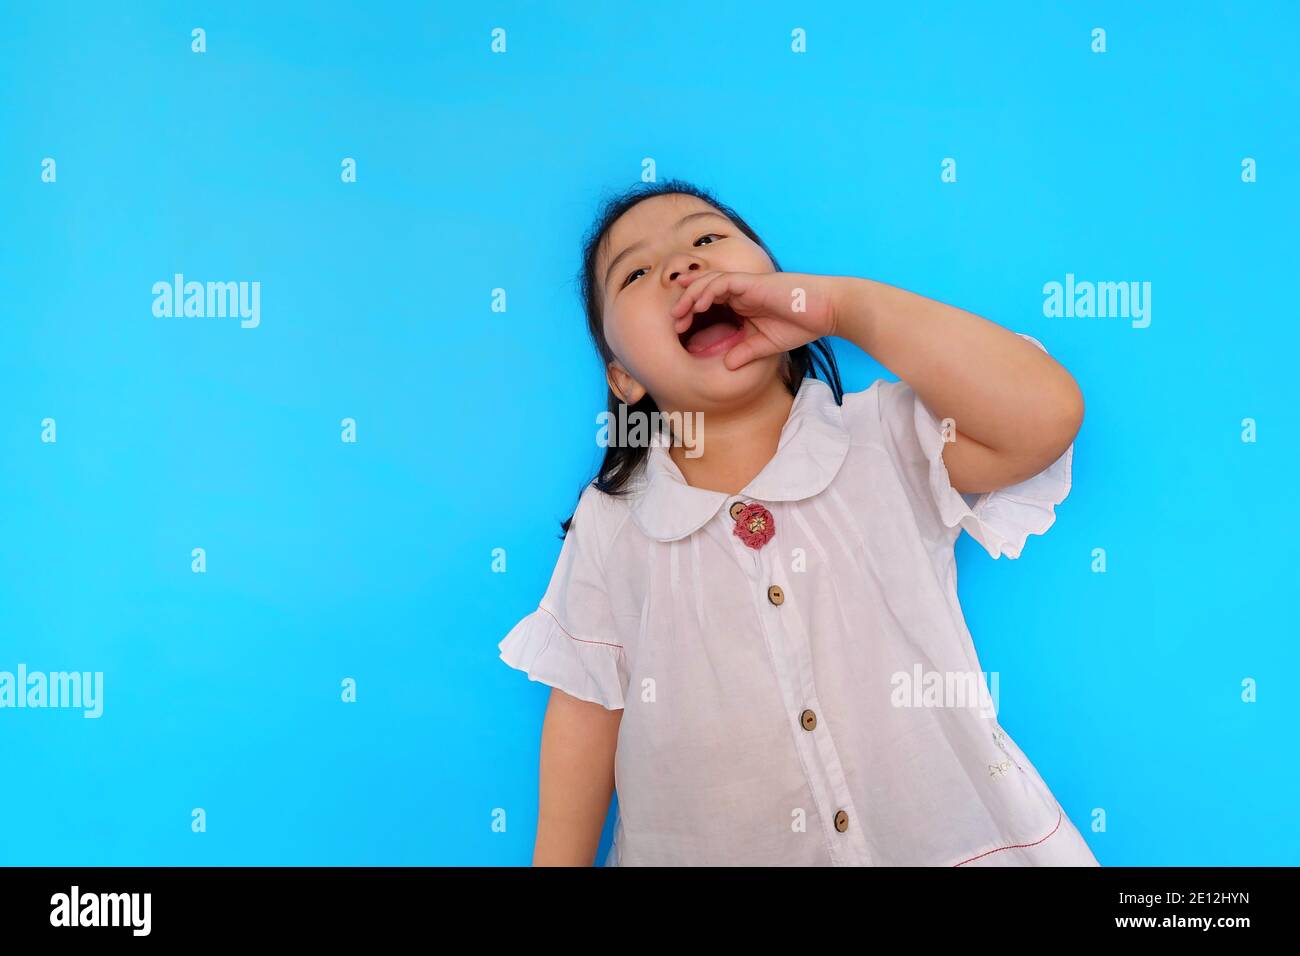 Una giovane ragazza asiatica carina che si sente eccitante, urlando dalla parte superiore dei suoi polmoni con la sua bocca aperta e una palma dalla sua bocca. Fondo blu chiaro Foto Stock